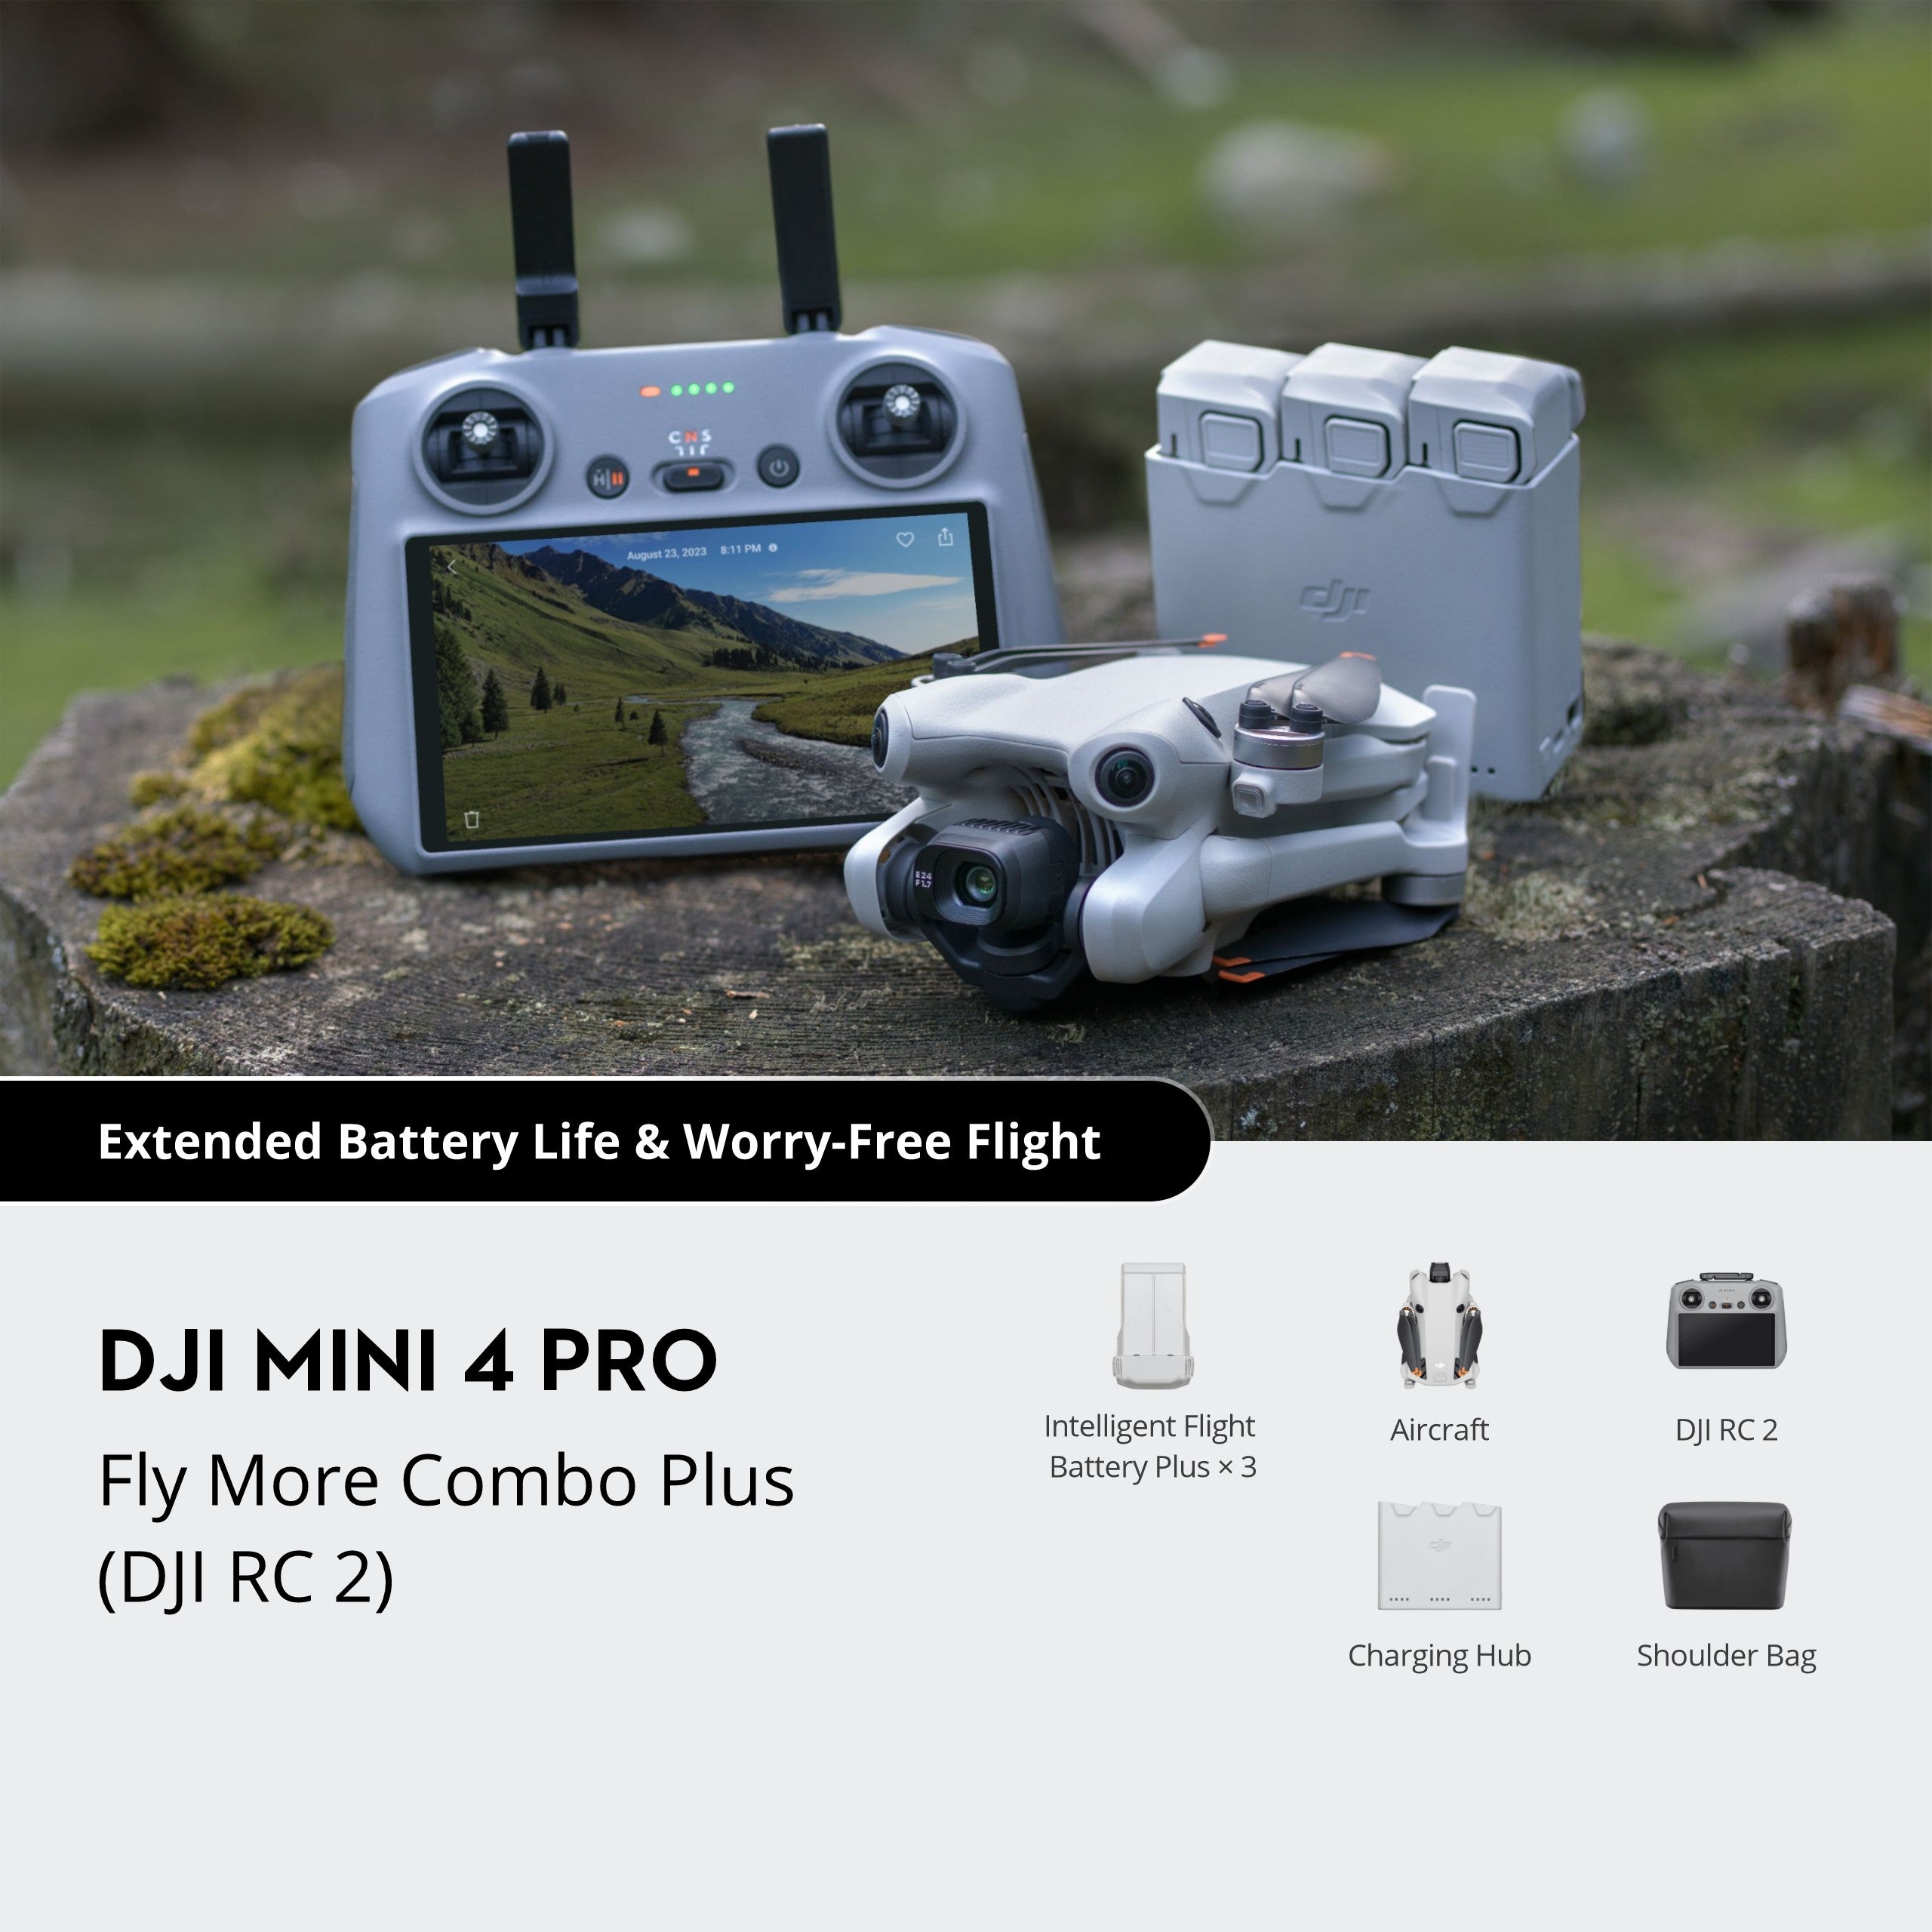 DJI Mini 4 Pro/Mini 3 Series Intelligent Flight Battery Plus,  Compatibility: DJI Mini 4 Pro, DJI Mini 3 Pro, DJI Mini 3